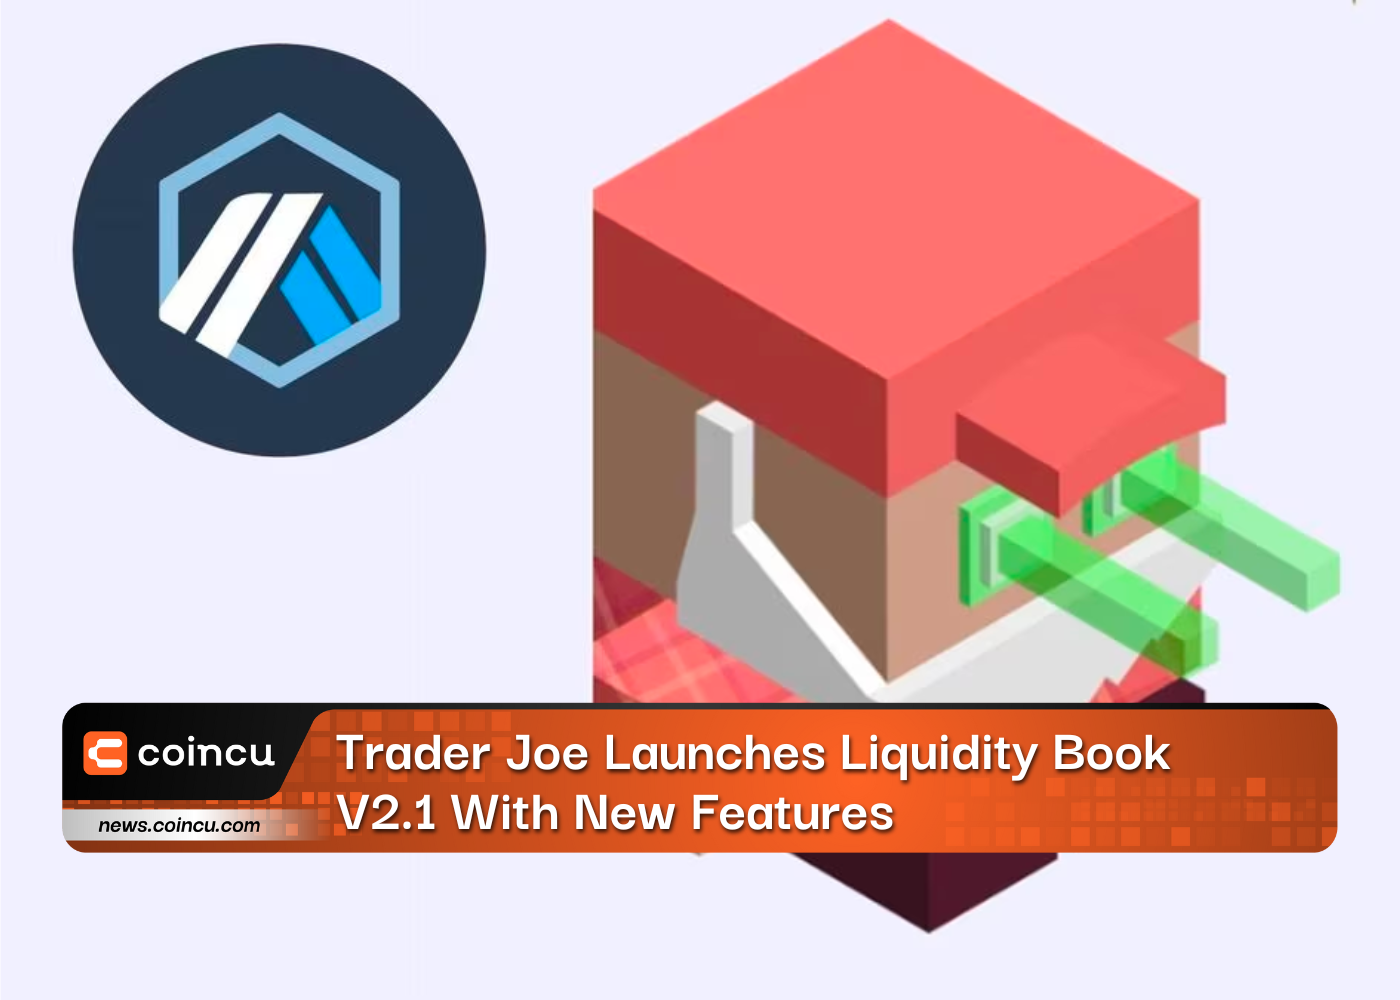 Trader Joe ra mắt Sách thanh khoản V2.1 với các tính năng mới